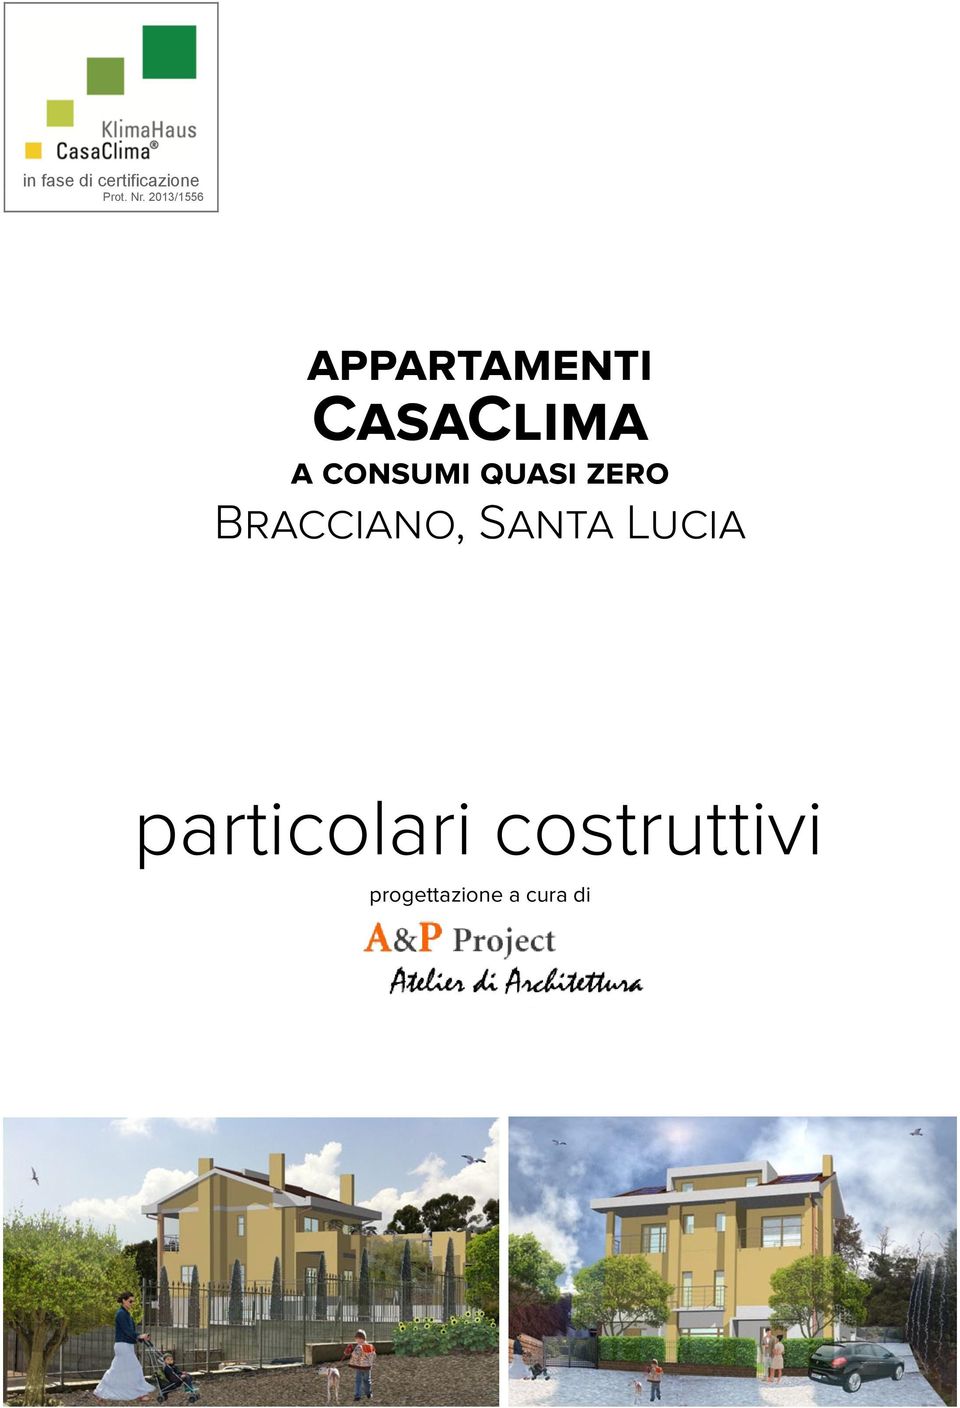 2013/1556 appartamenti